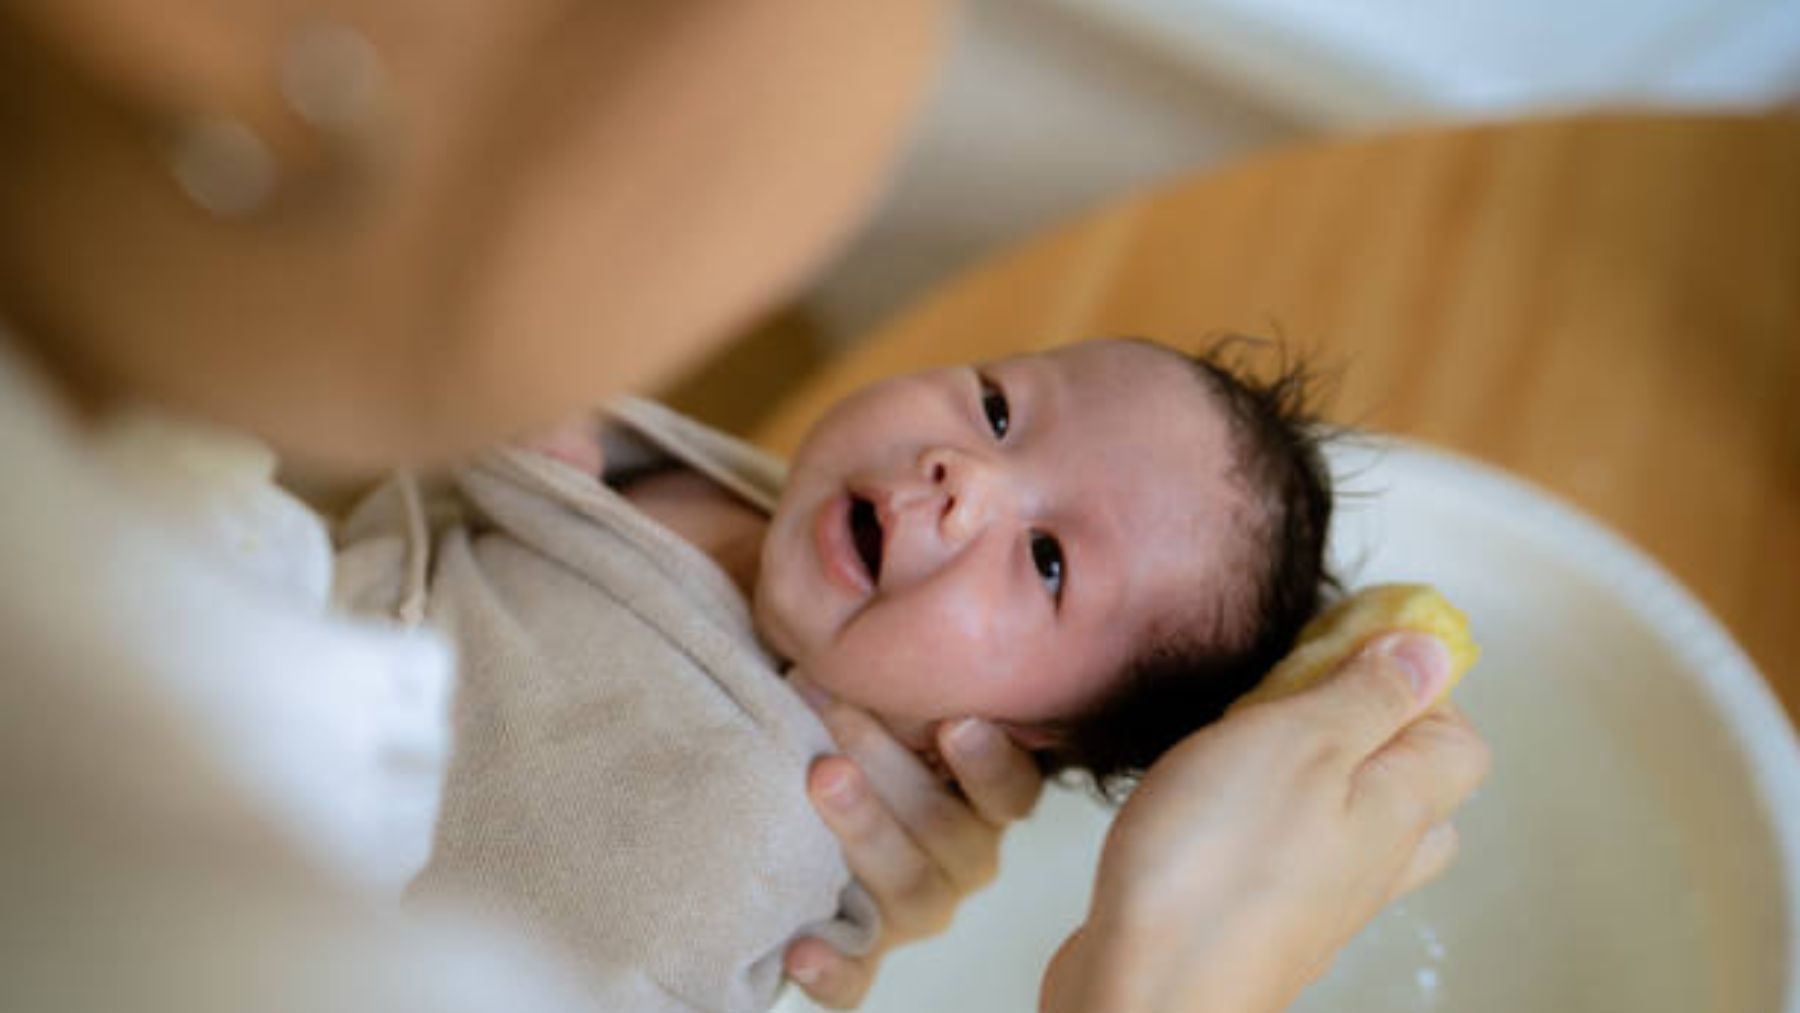 Eccema y piel seca en el recién nacido